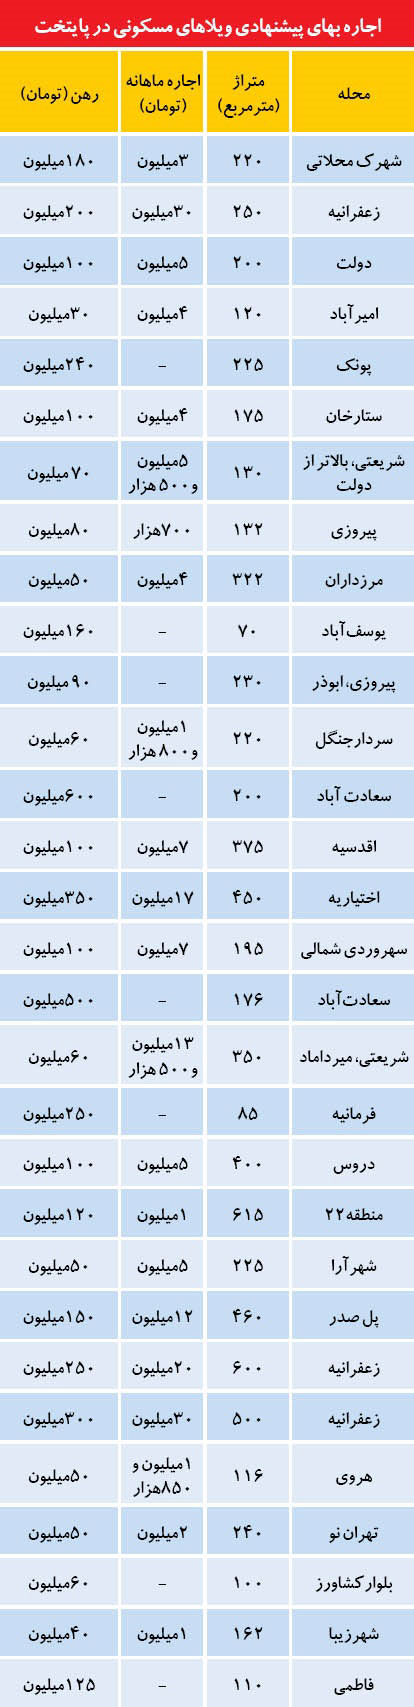 قیمت خانه های ویلایی در نقاط مختلف تهران